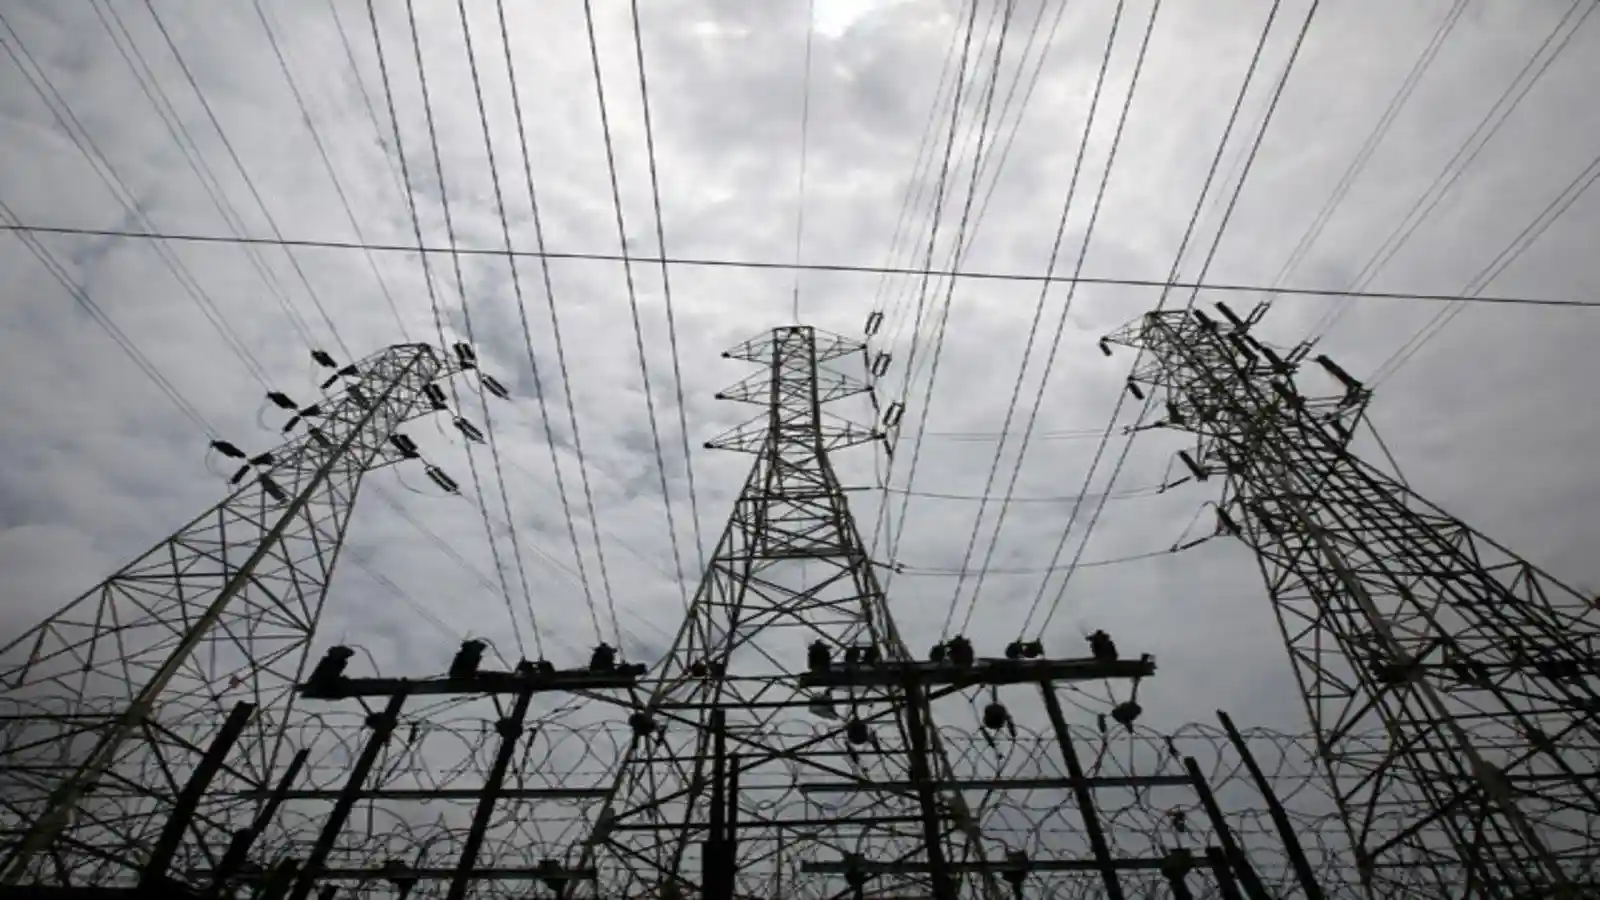 बड़ी खबर: घोर बिजली संकट से घिर सकता है भारत, बड़े पावर प्लांट्स के पास सिर्फ चार दिनों का कोयला